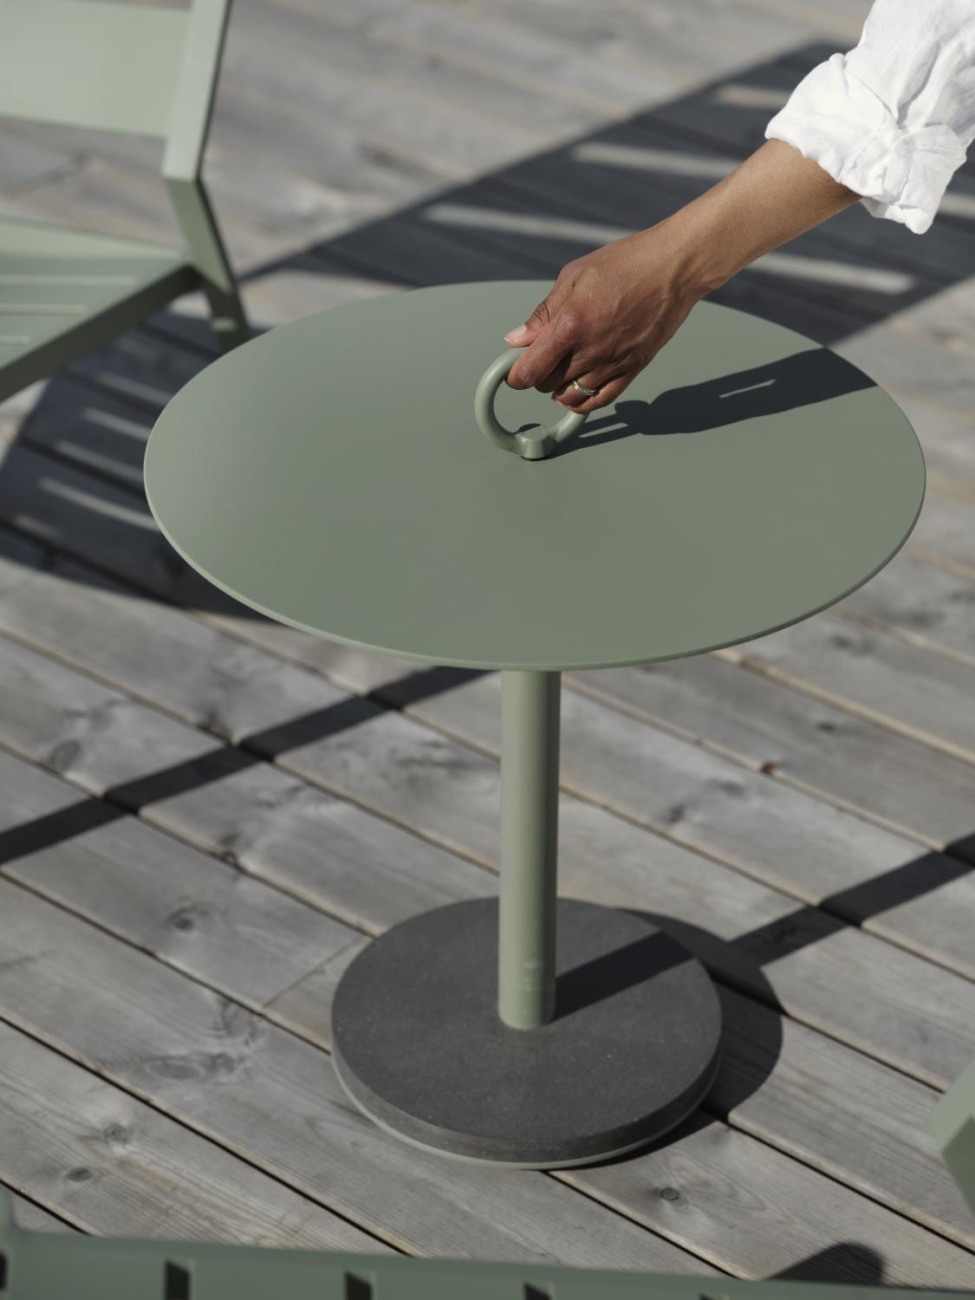 Der Gartenbeistelltisch Niobe überzeugt mit seinem modernen Design. Gefertigt wurde die Tischplatte aus Metall und hat einen grünen Farbton. Das Gestell ist auch aus Metall und hat eine grüne Farbe. Der Tisch besitzt einen Durchmesser von 50 cm.